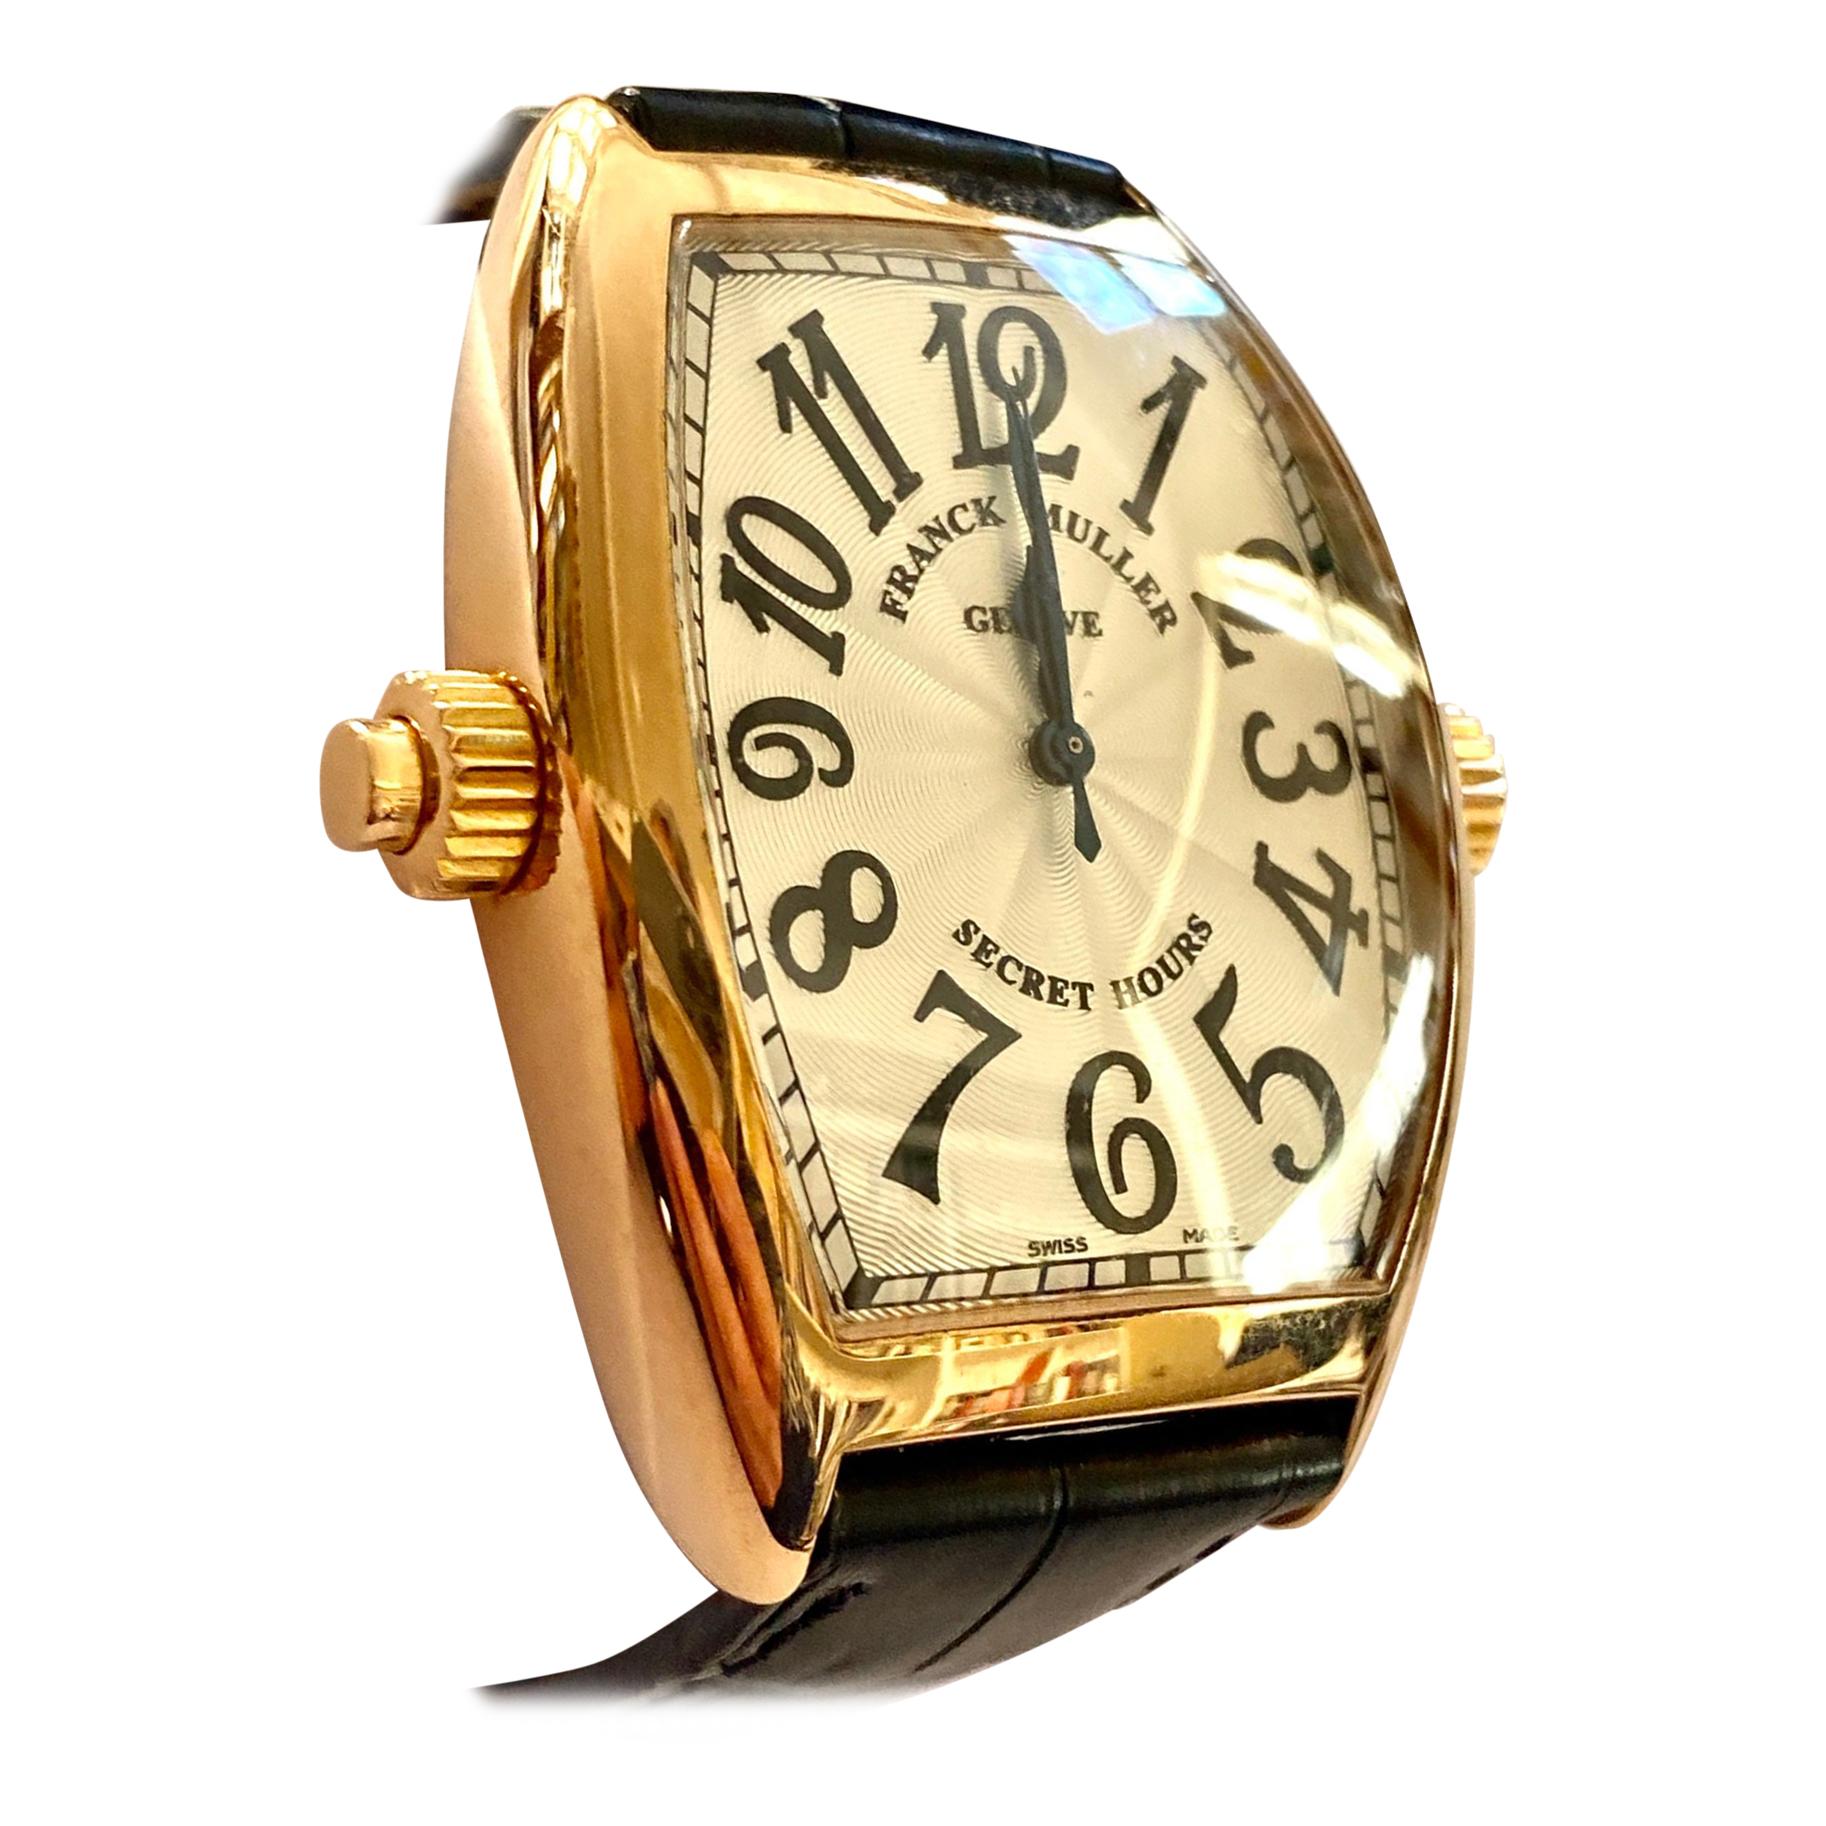 Franck Muller, Watch 7880 SE H II Secret Hours, 18 Karat Rose Gold Leather Strap